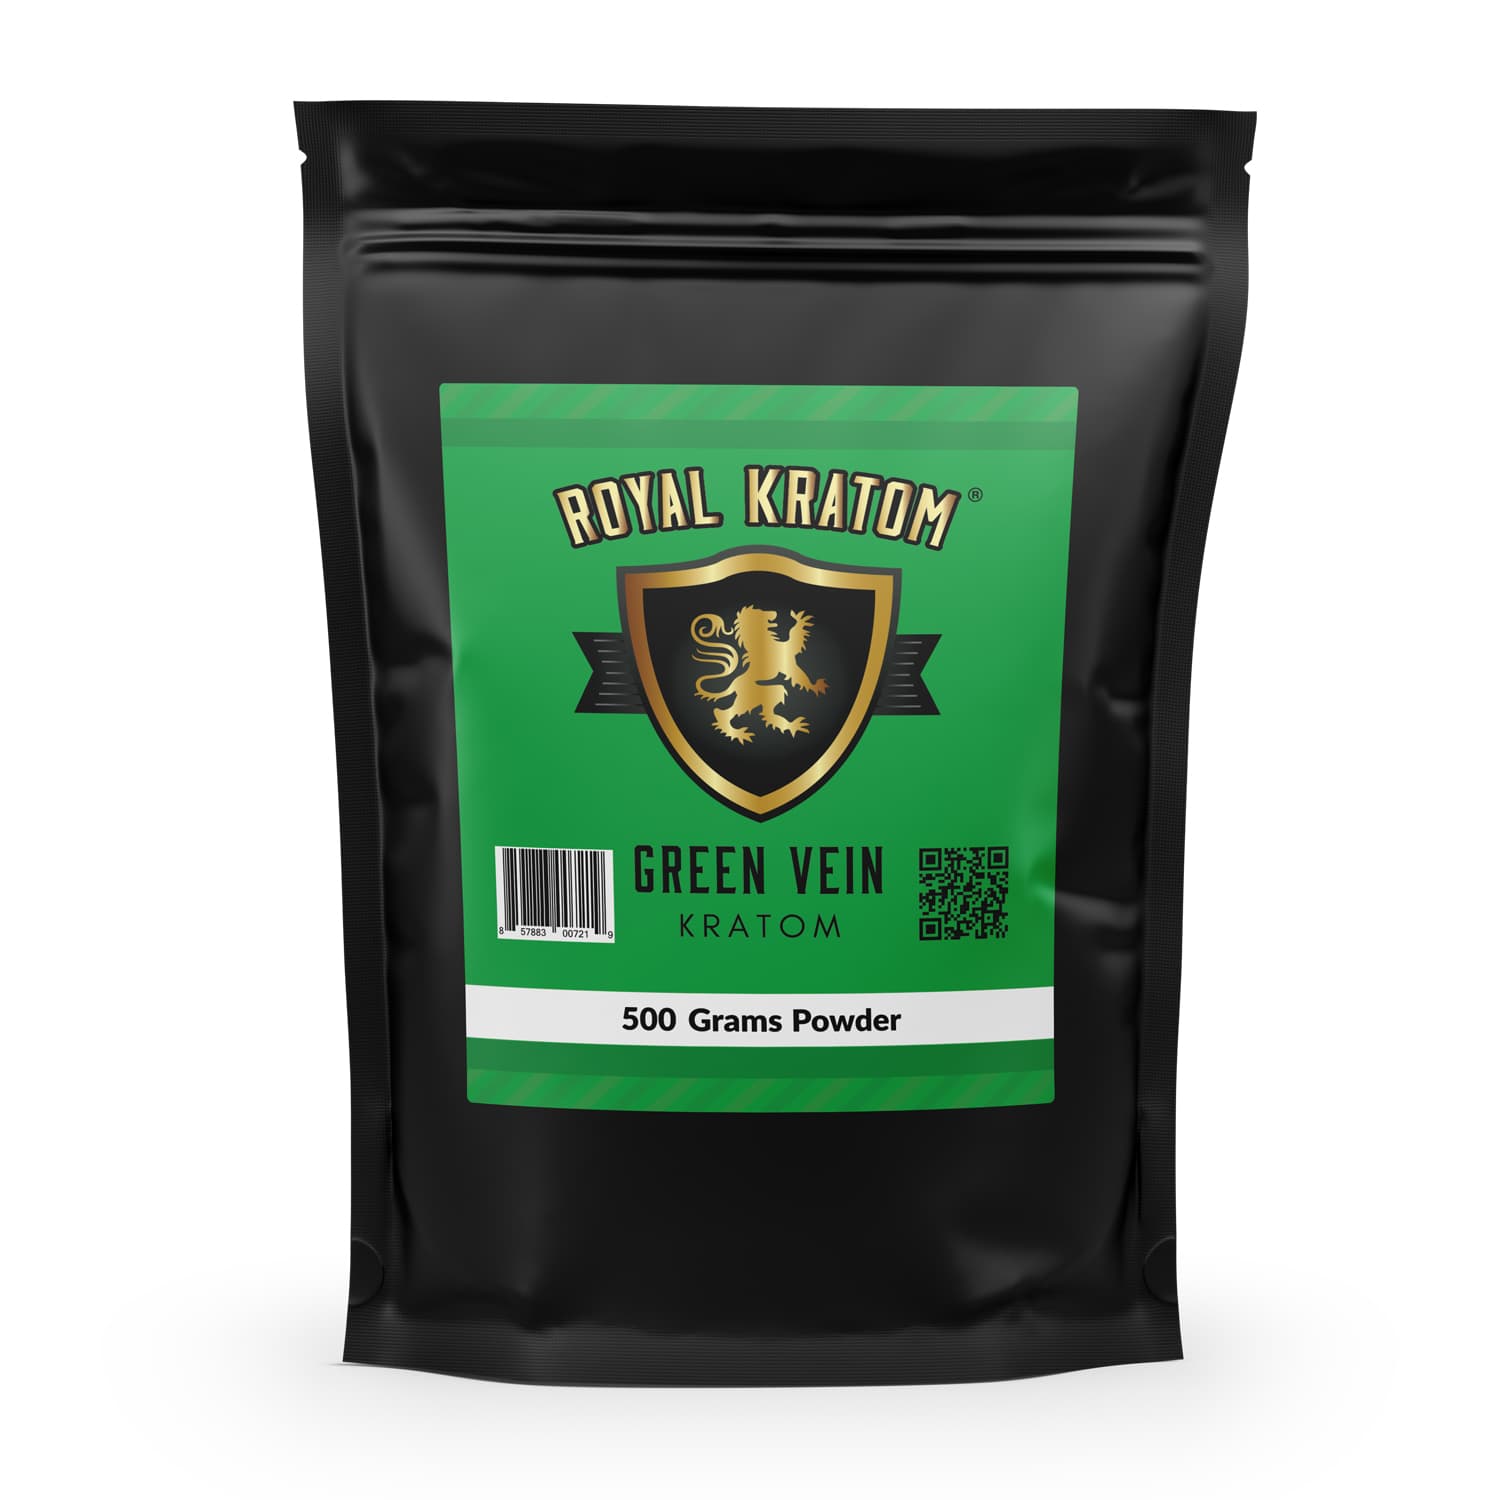 Royal Kratom green vein kratom powder 500 grams package